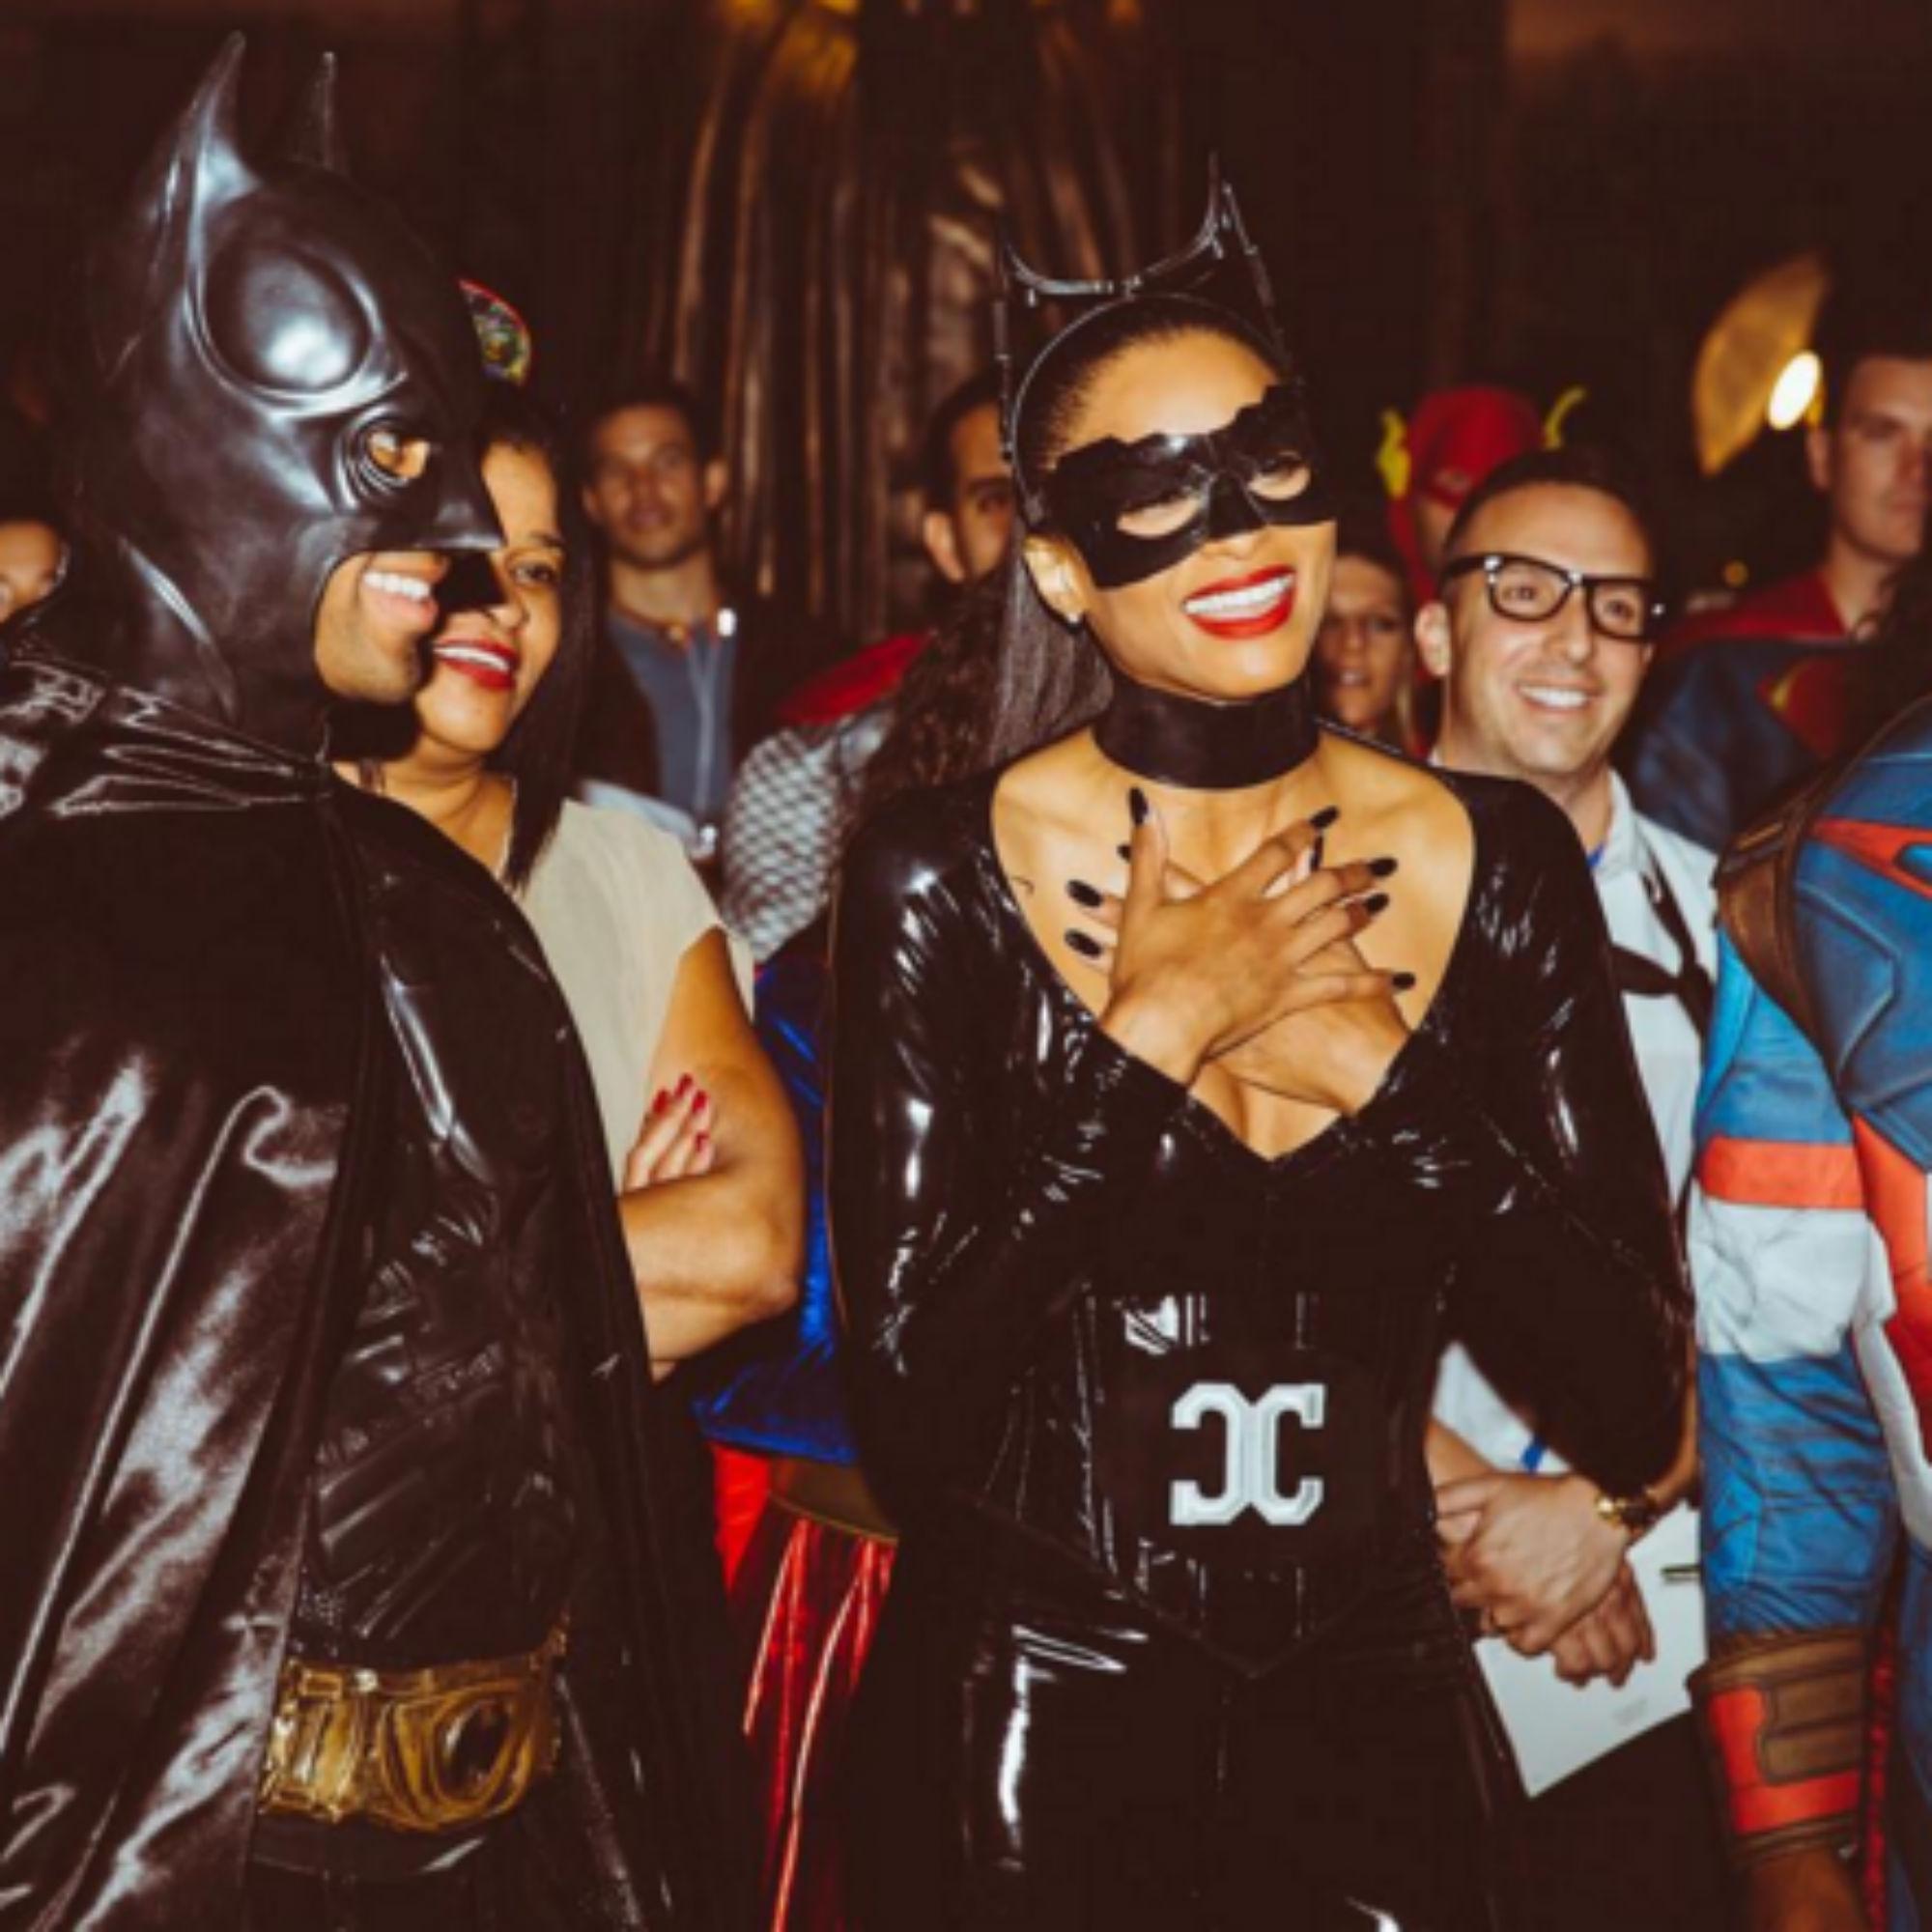 La cantante Ciara per Halloween 2015 ha già scelto il costume: sarà una sexy Bat-girl (foto da Instagram)